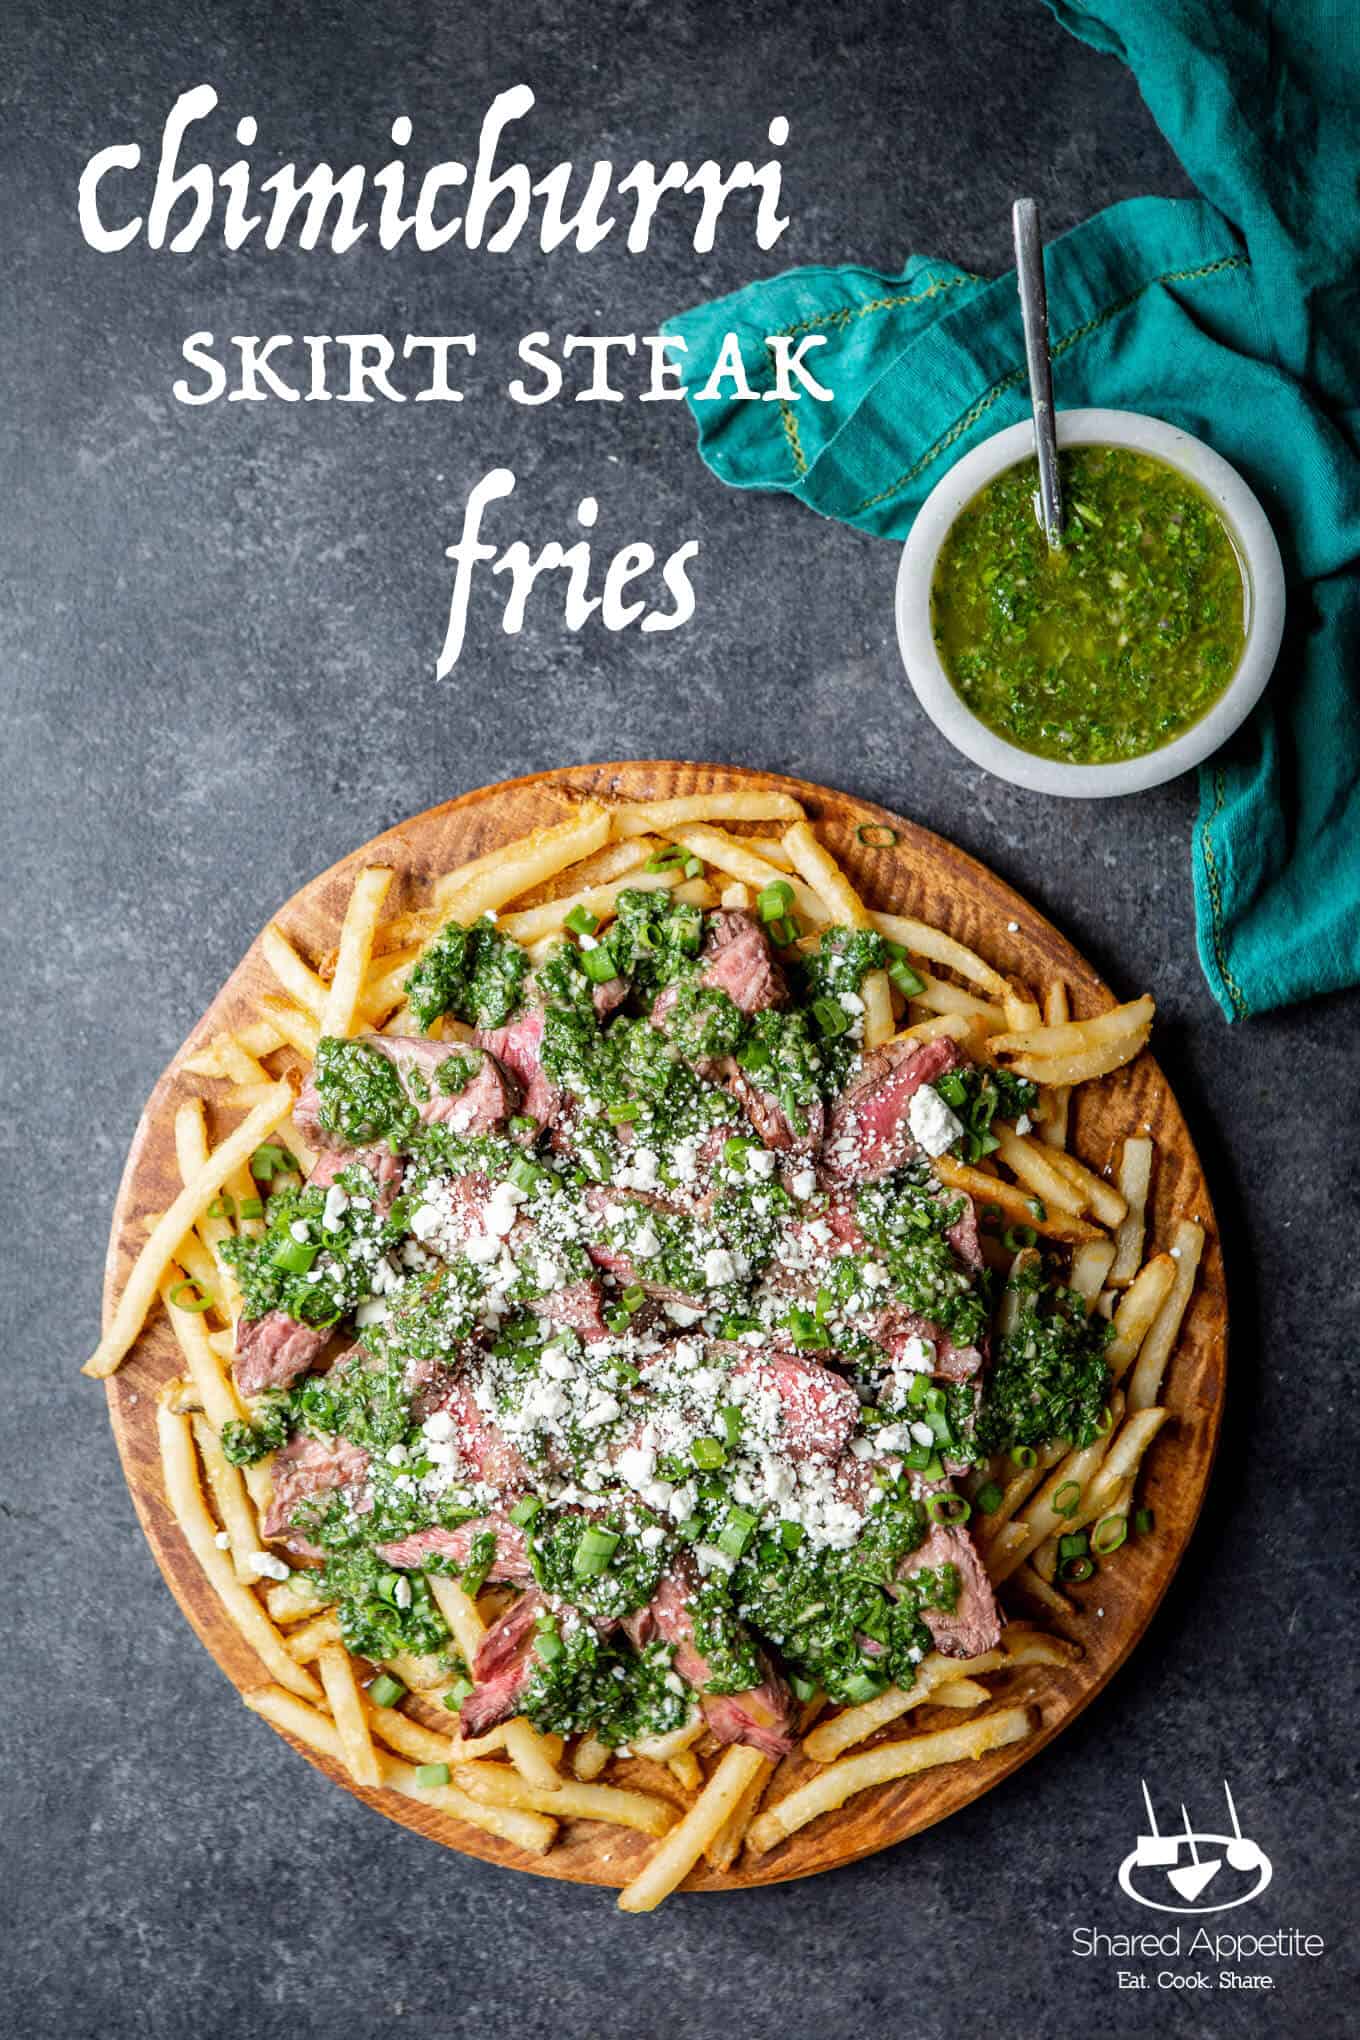 Chimichurri Skirt Steak Fries